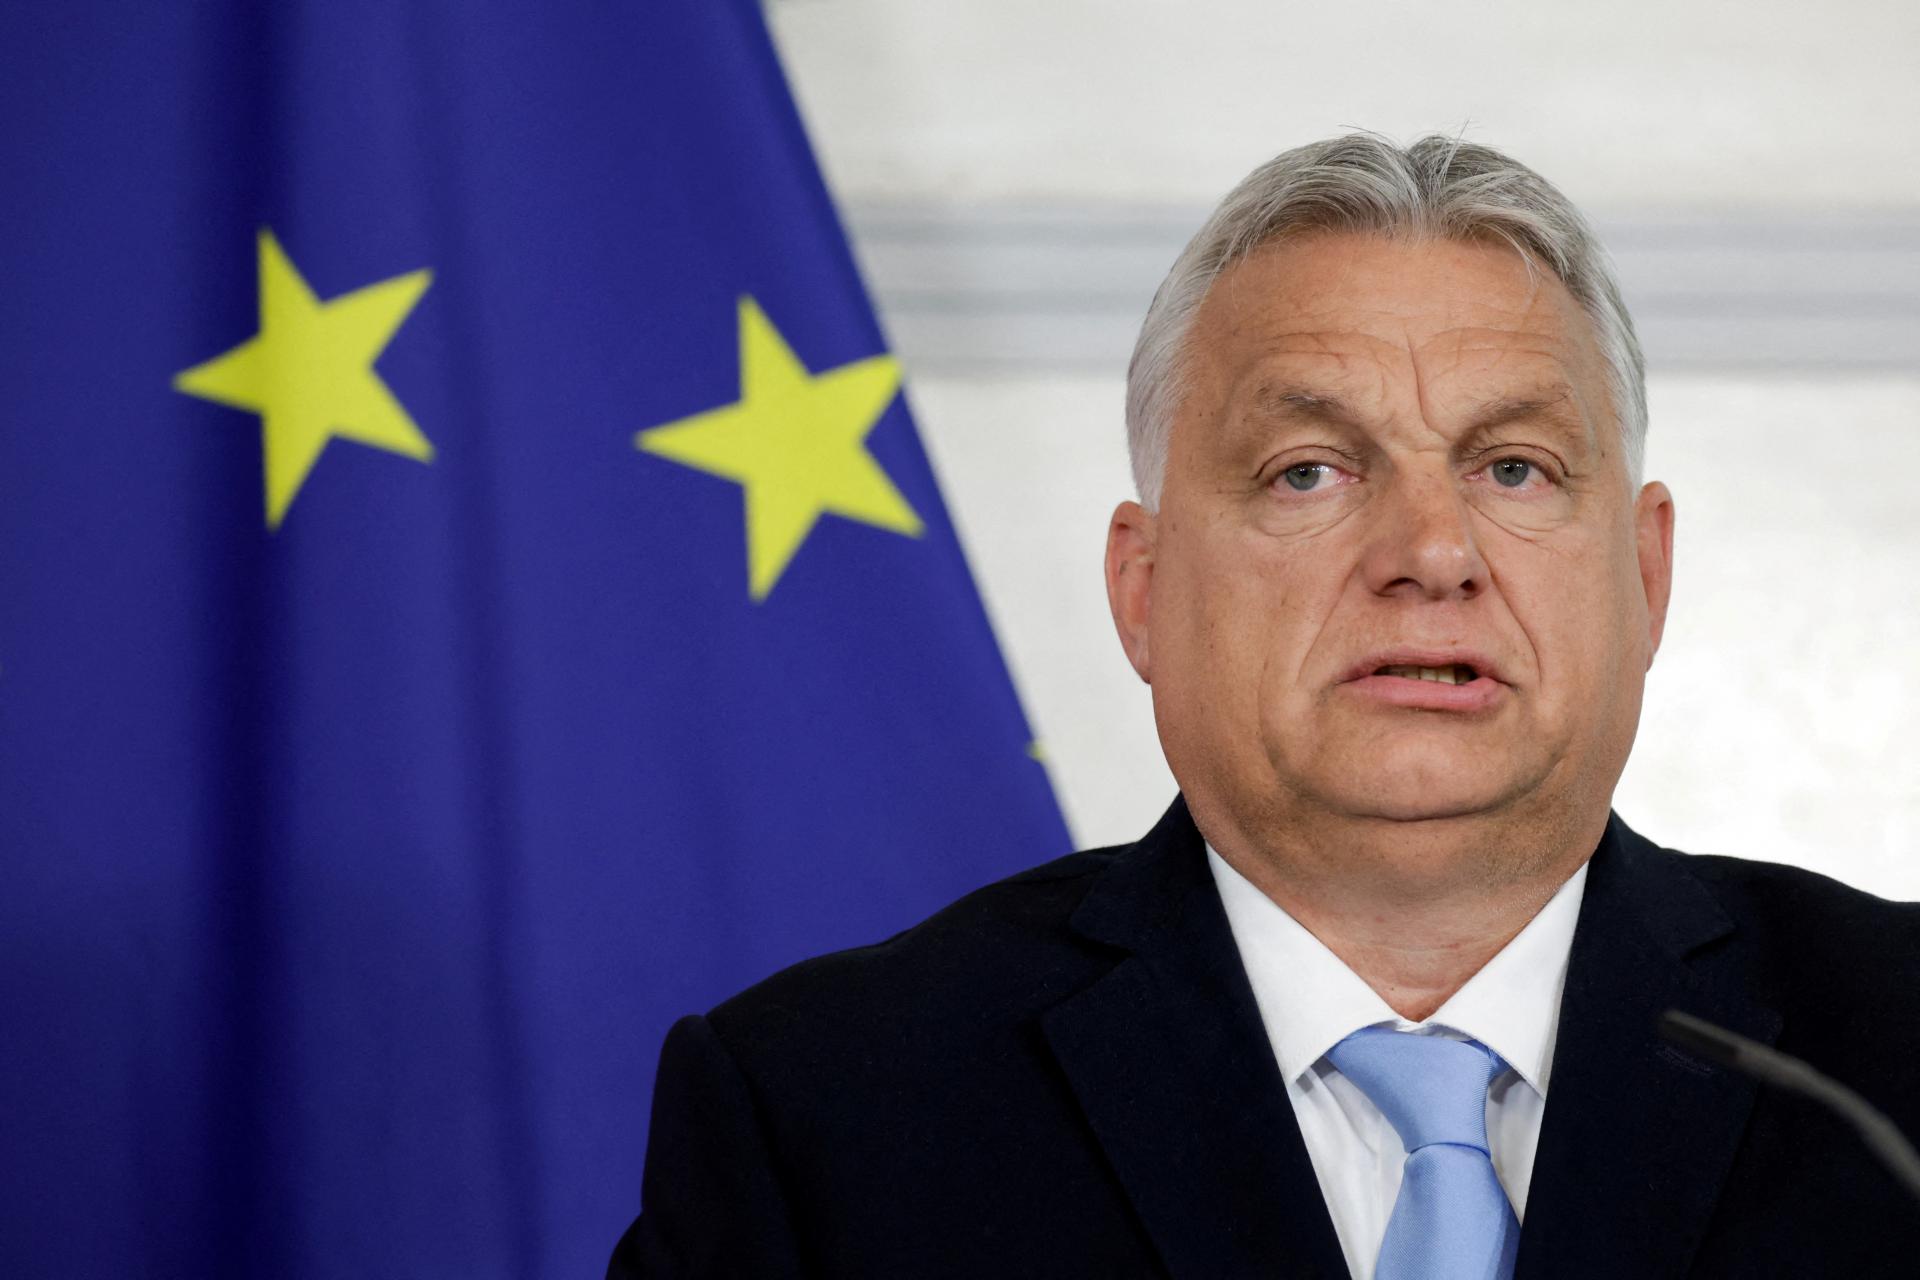 Nemecko už nevonia rovnako ako kedysi, vyhlásil Orbán